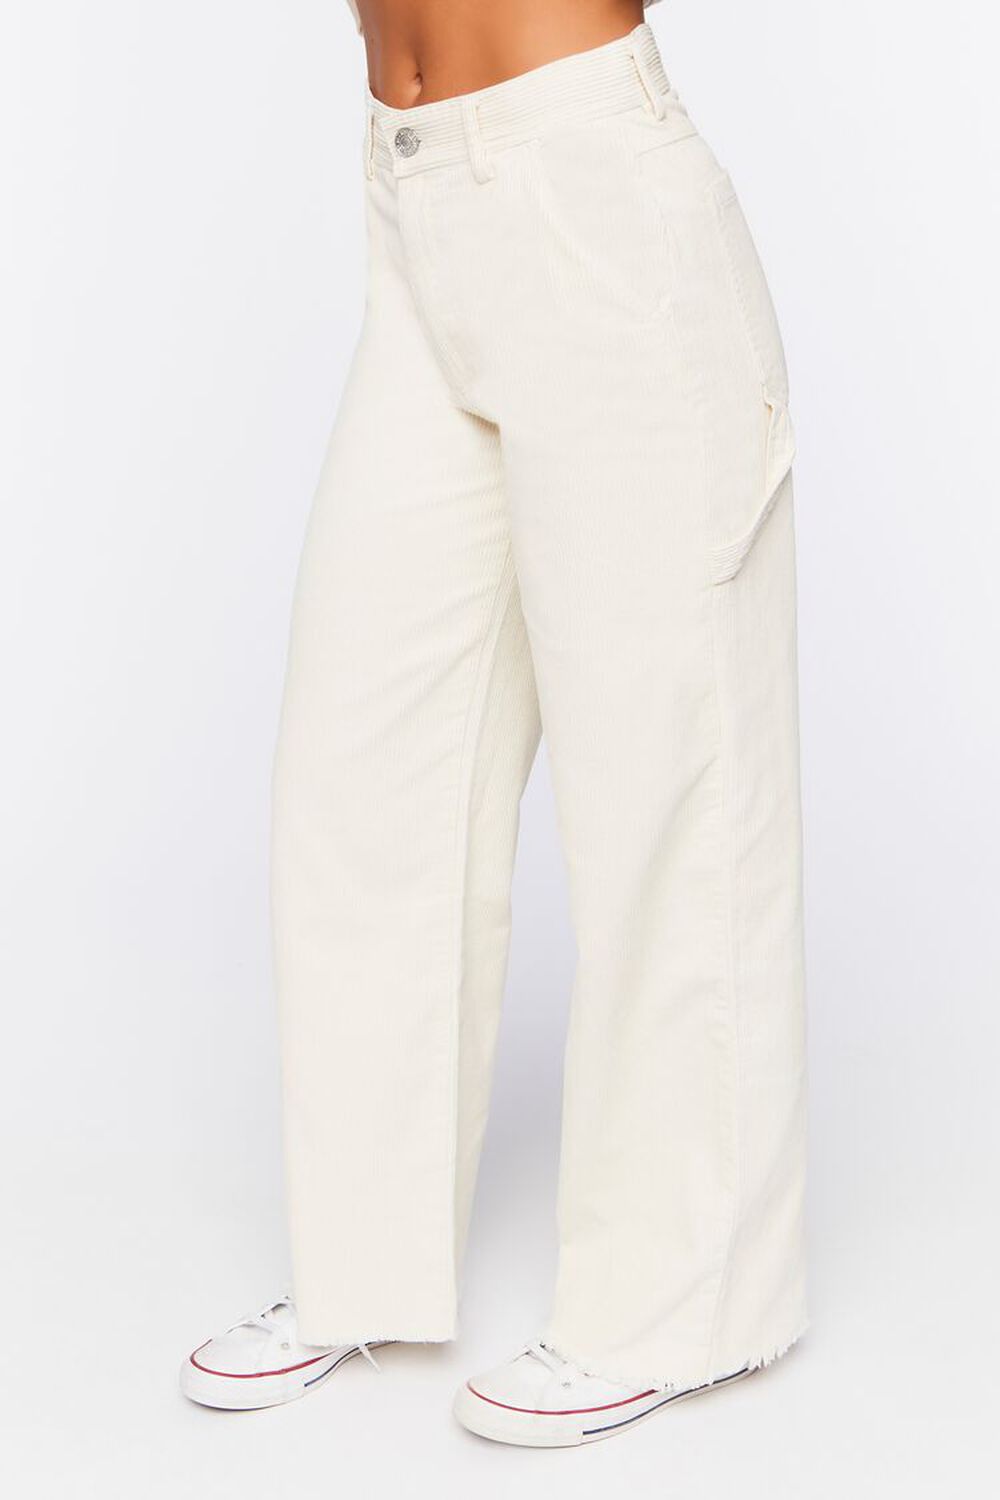 Frayed Corduroy Mid-Rise Pants, image 3